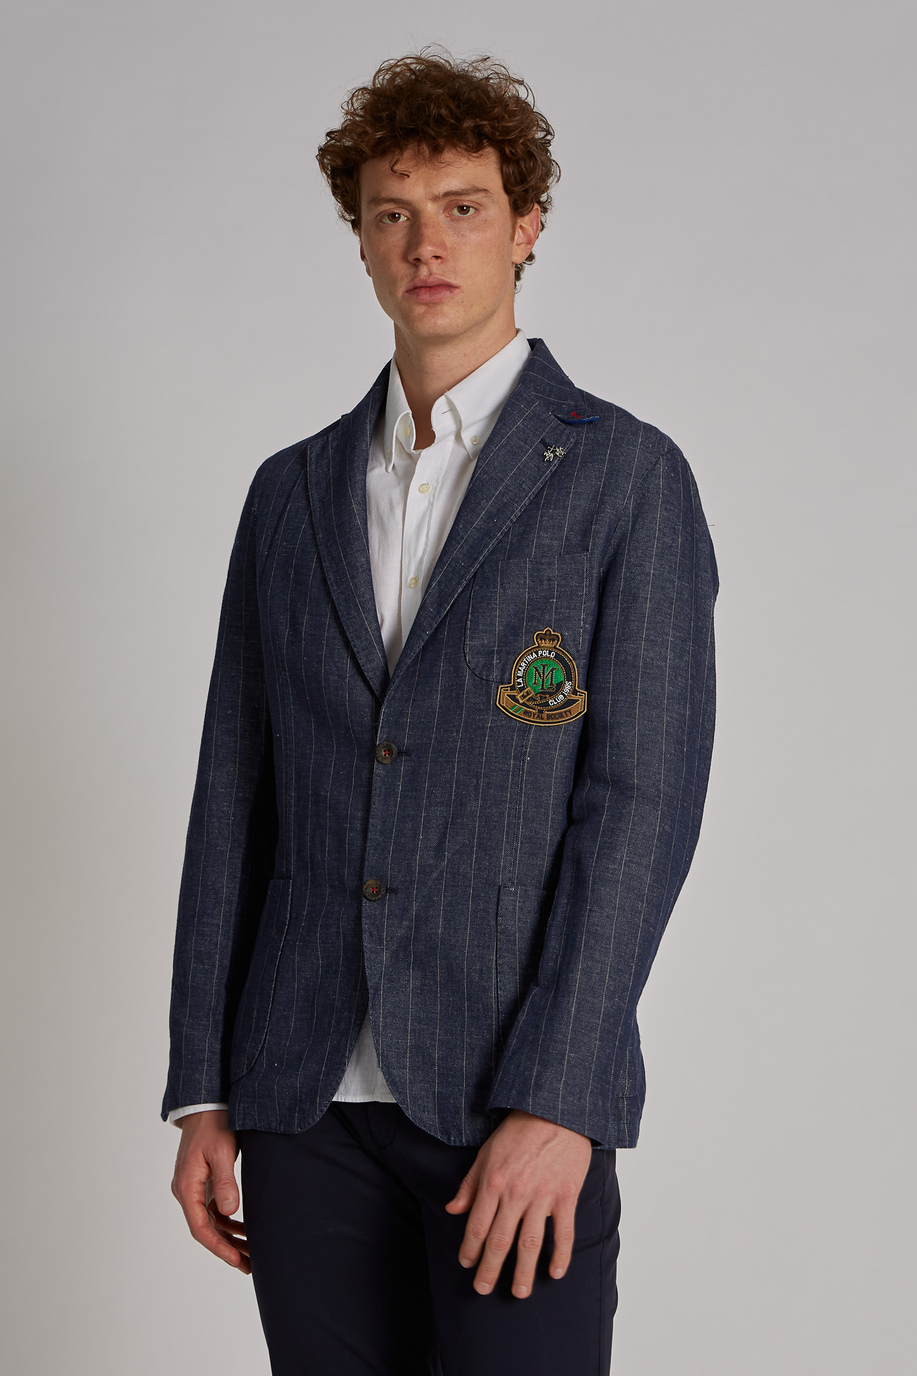 Giacca da uomo in cotone misto lino modello blazer regular fit | La Martina - Official Online Shop